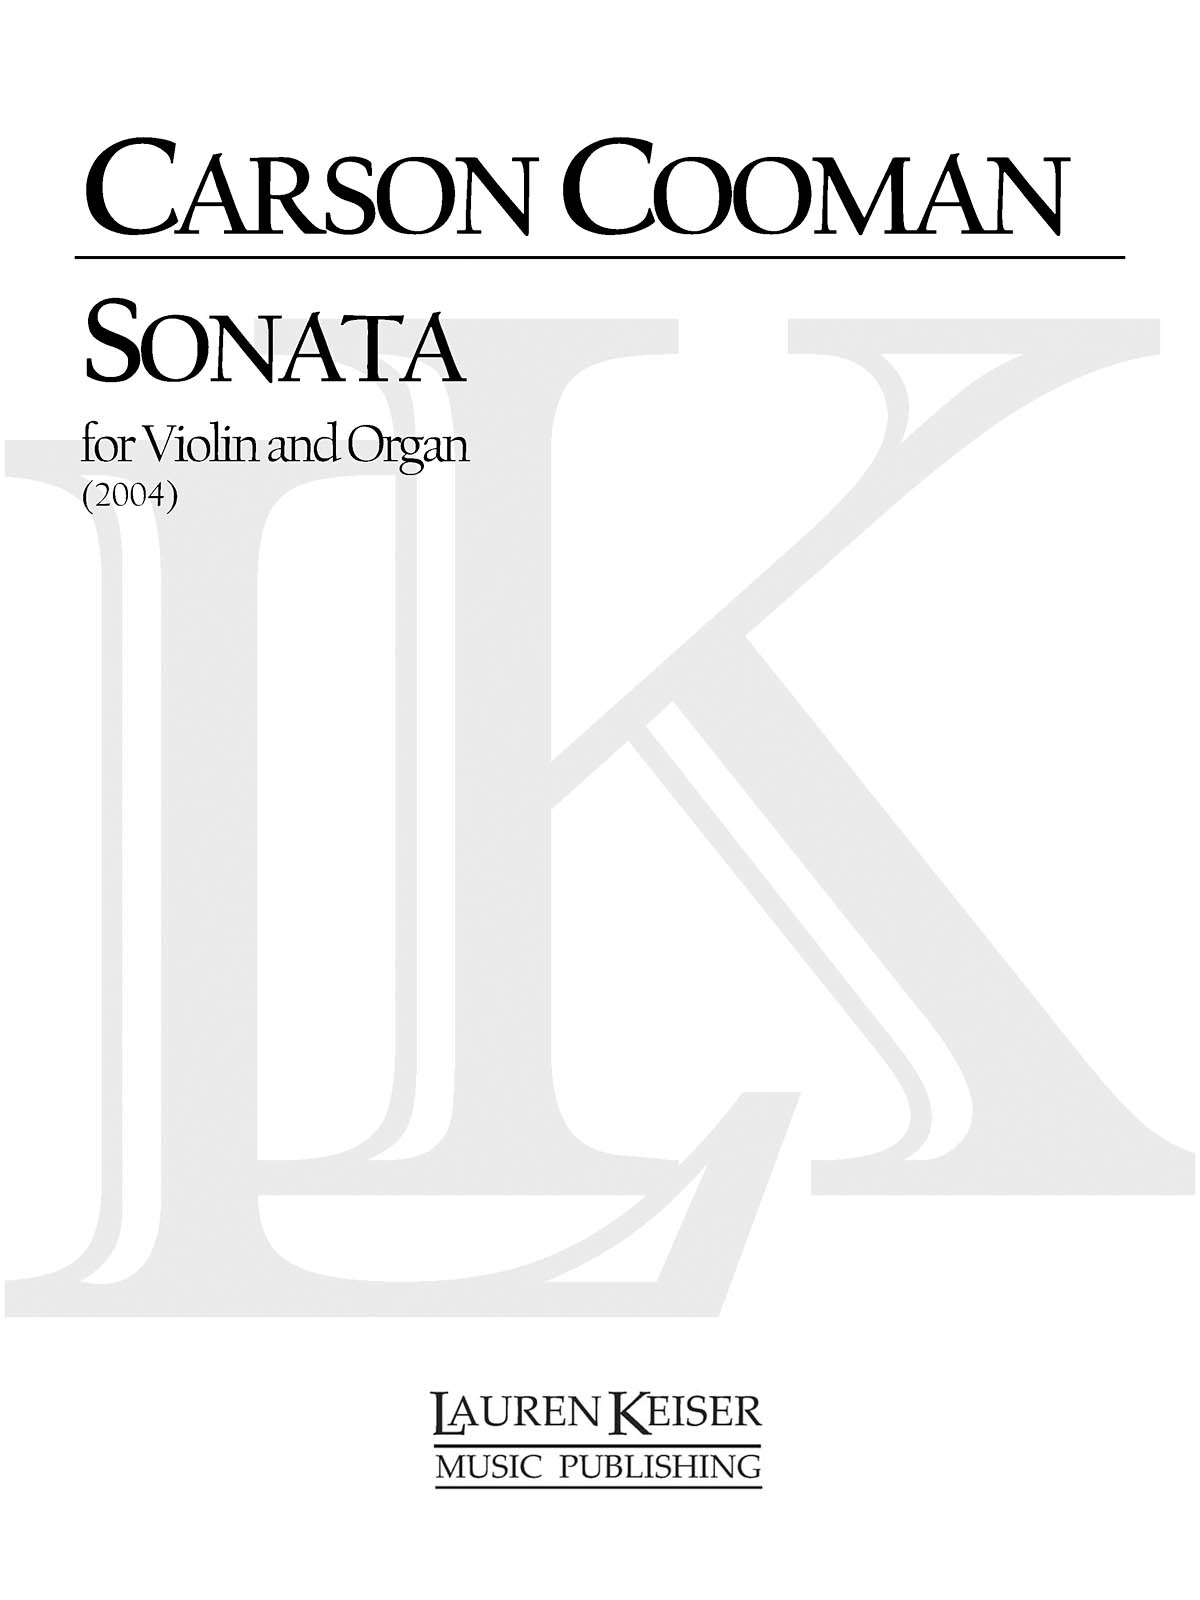 Sonata for Violin and Organ